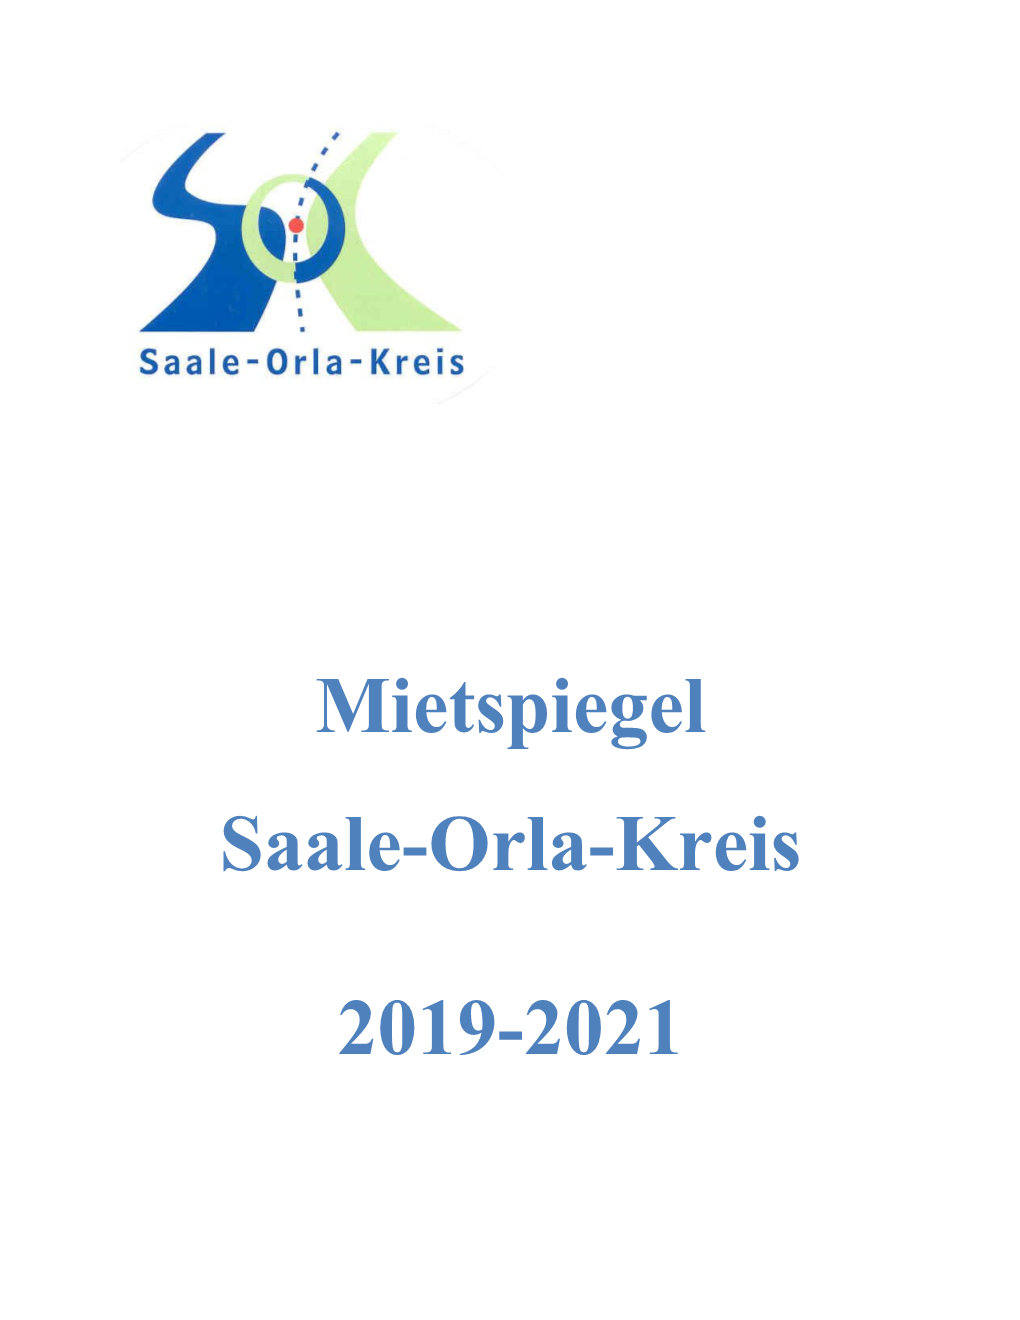 Mietspiegel Saale-Orla-Kreis 2019-2021